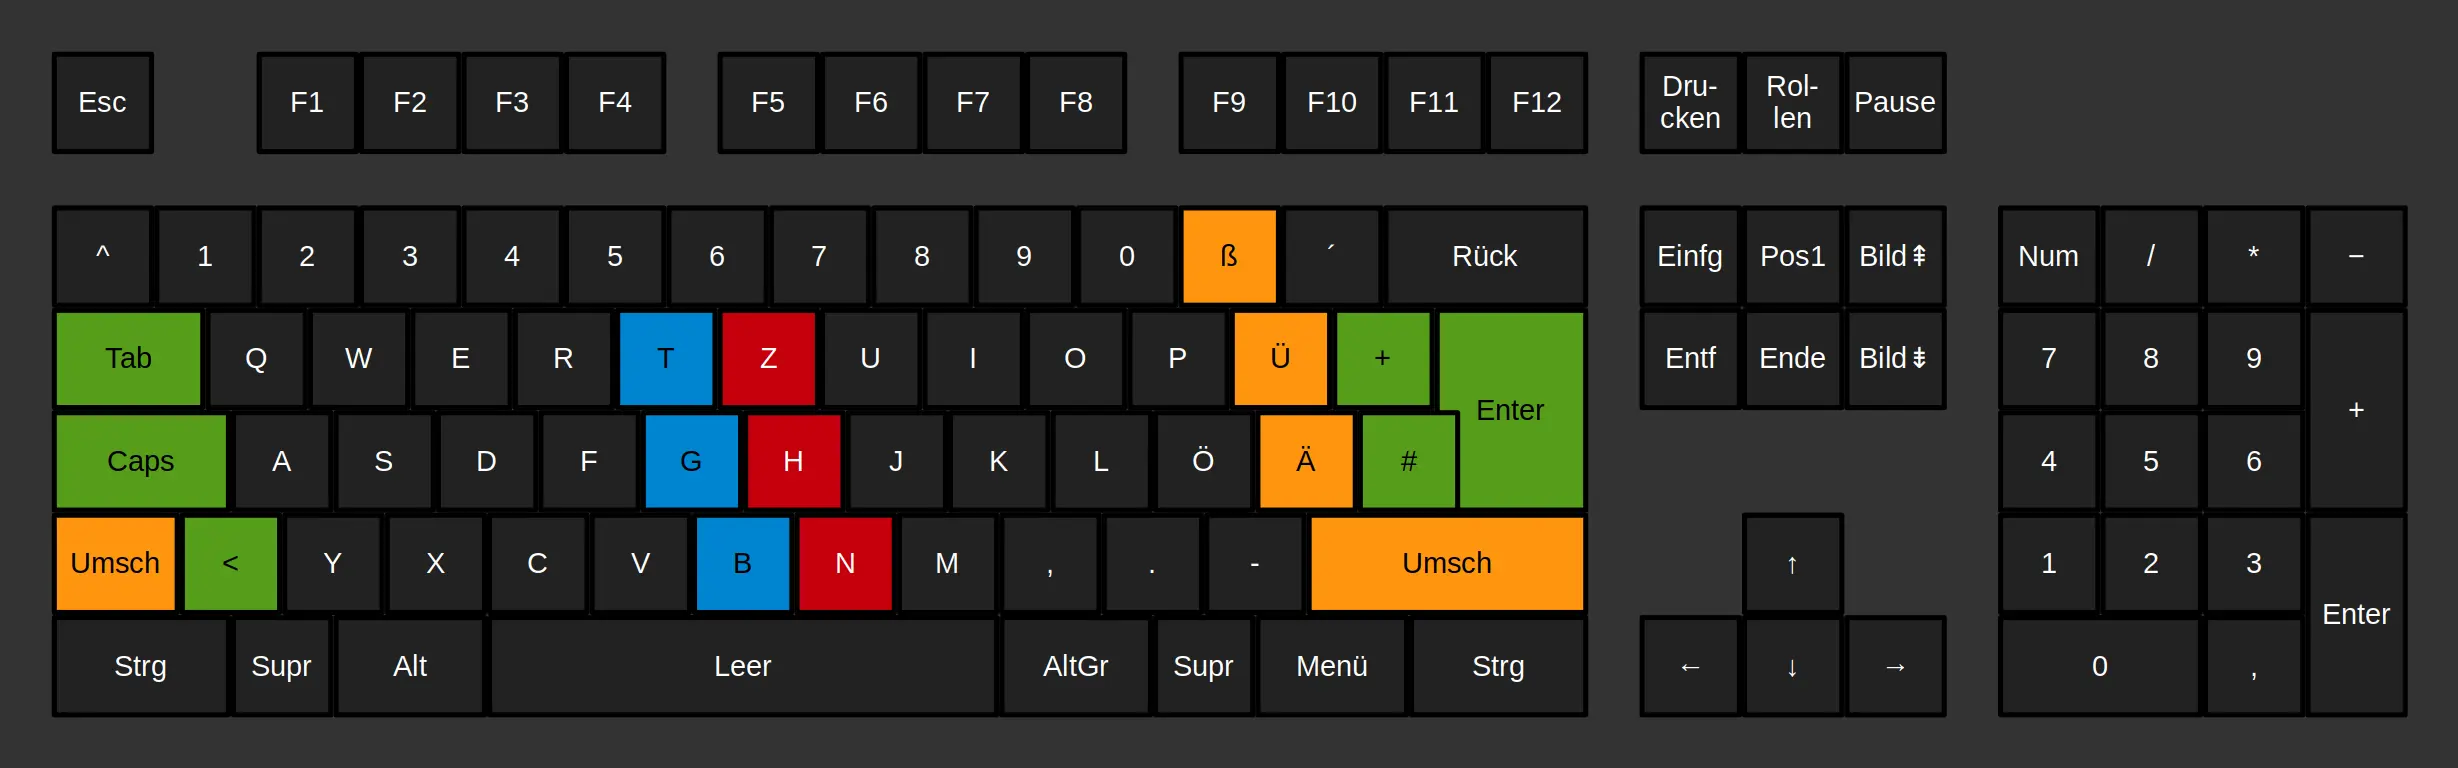 Schemazeichnung einer klassischen 105-Tasten Tastatur mit farblicher Hervorhebung der schlechten Bereiche.